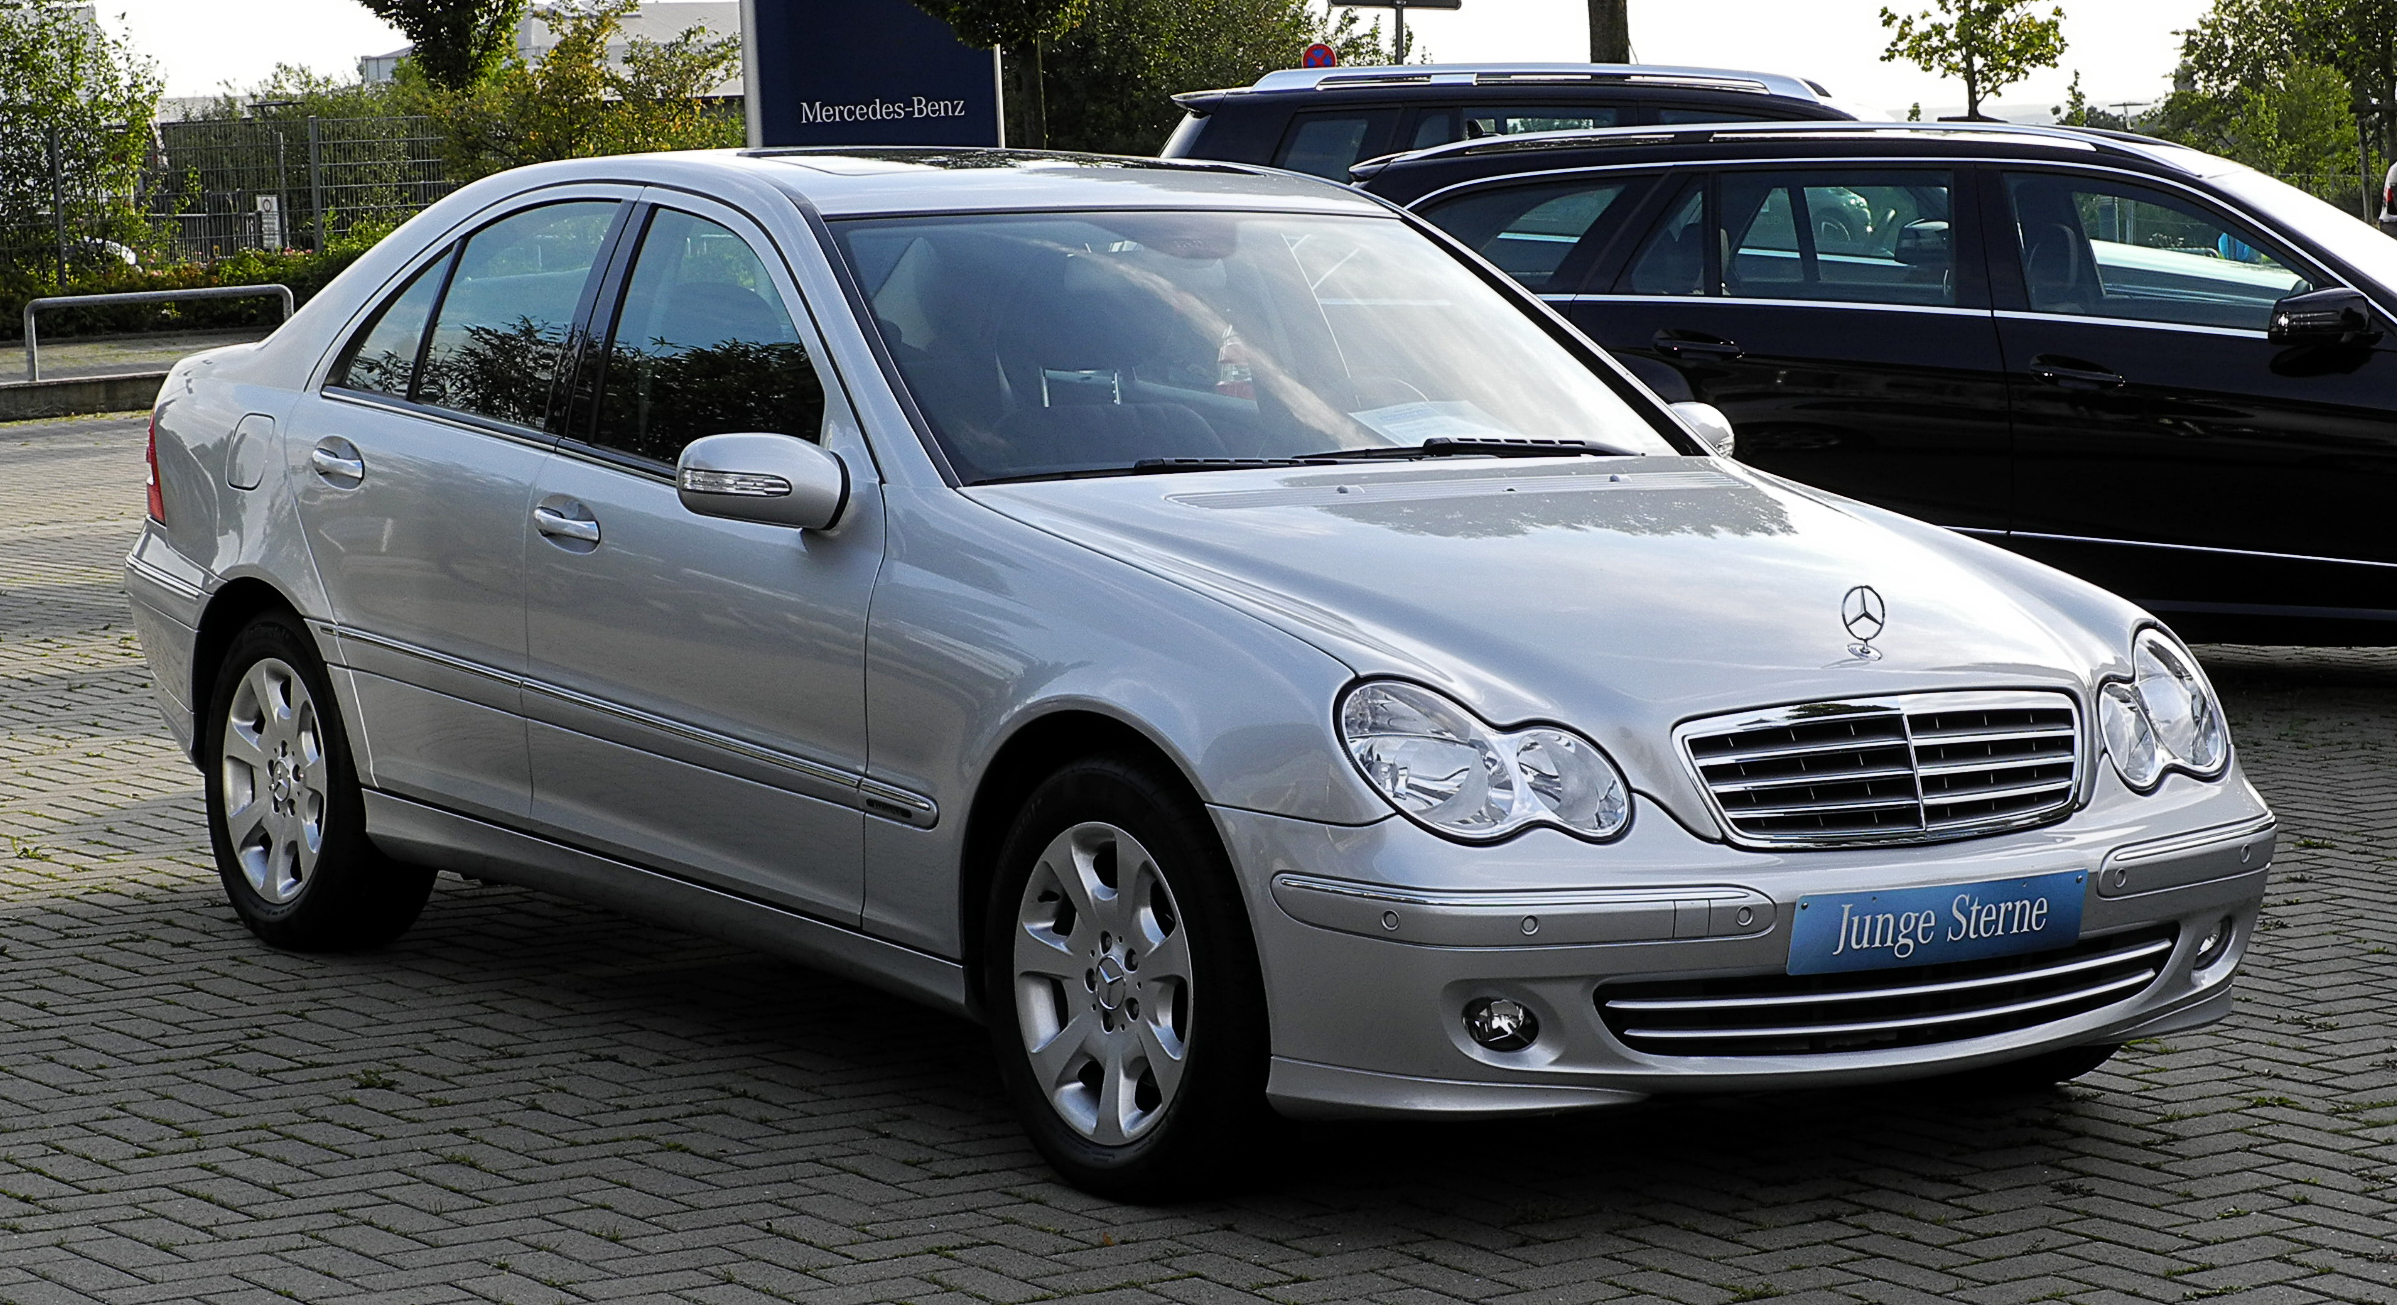 Mercedes-Benz C-Class (W203) - Wikipedia